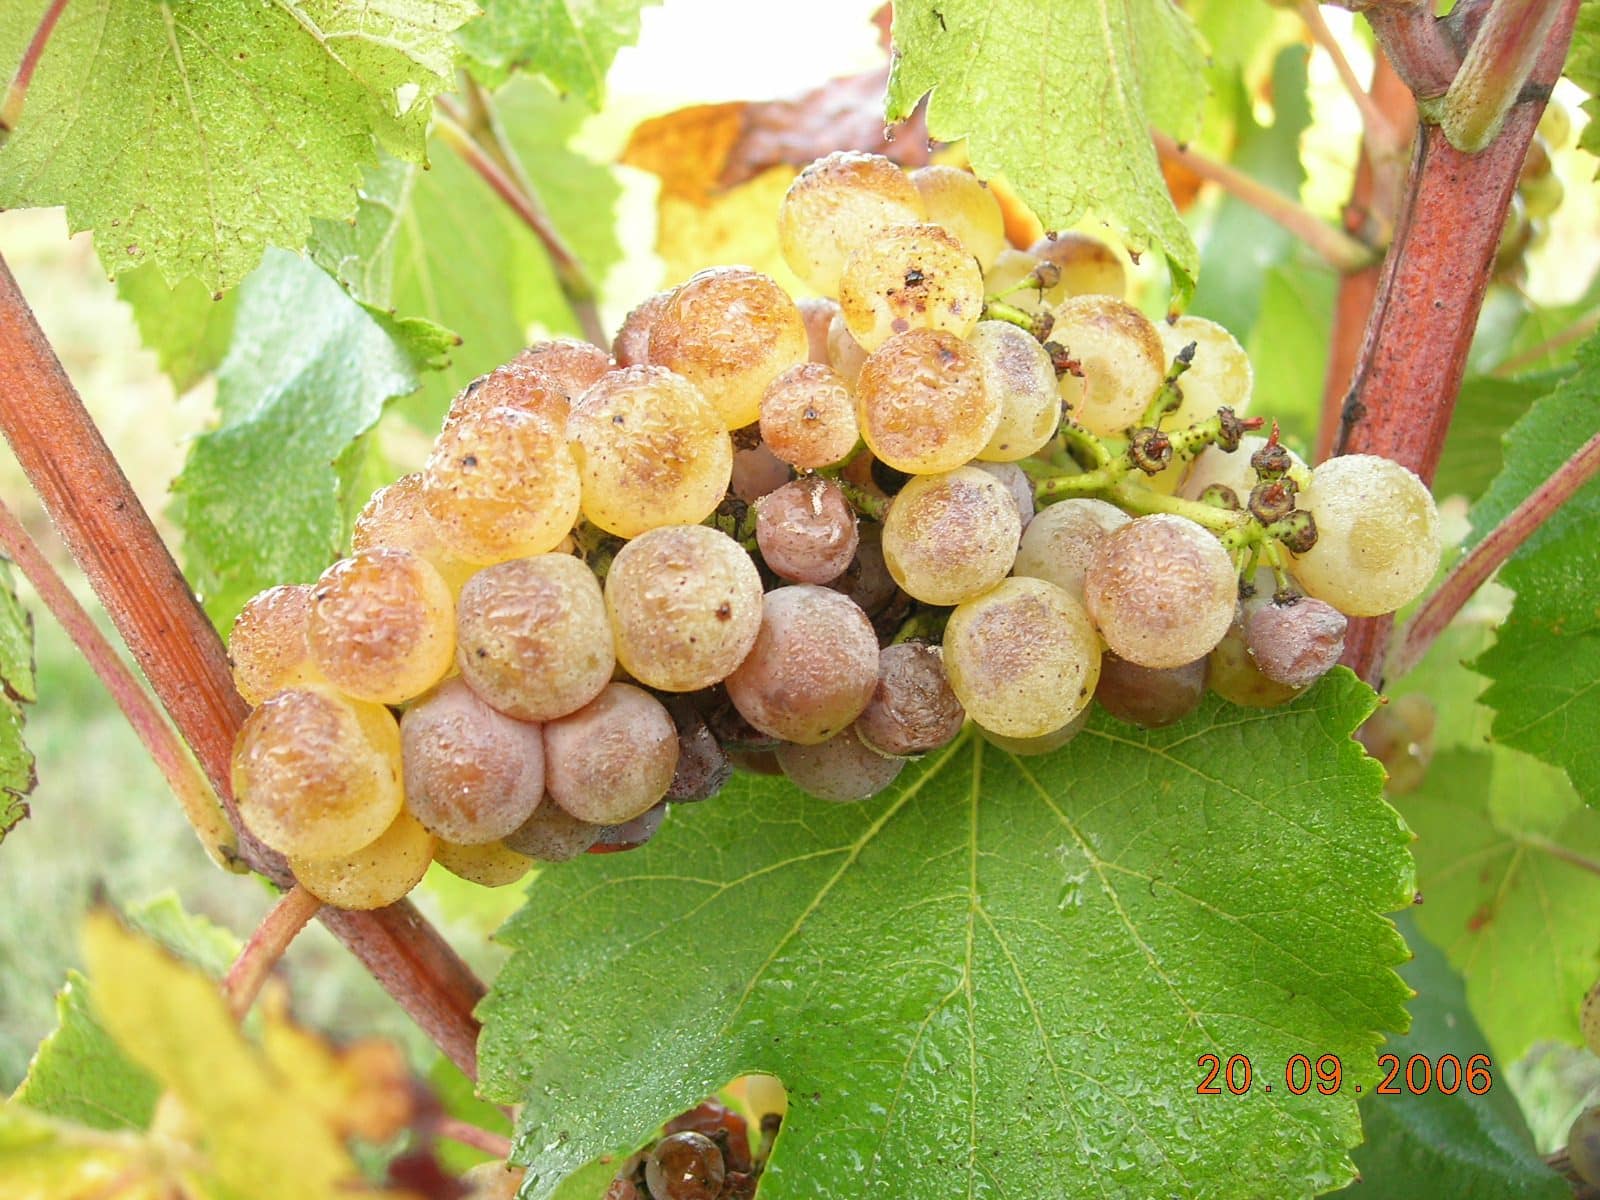 Vinhas Sudoeste Fronton uvas brancas Foto 2